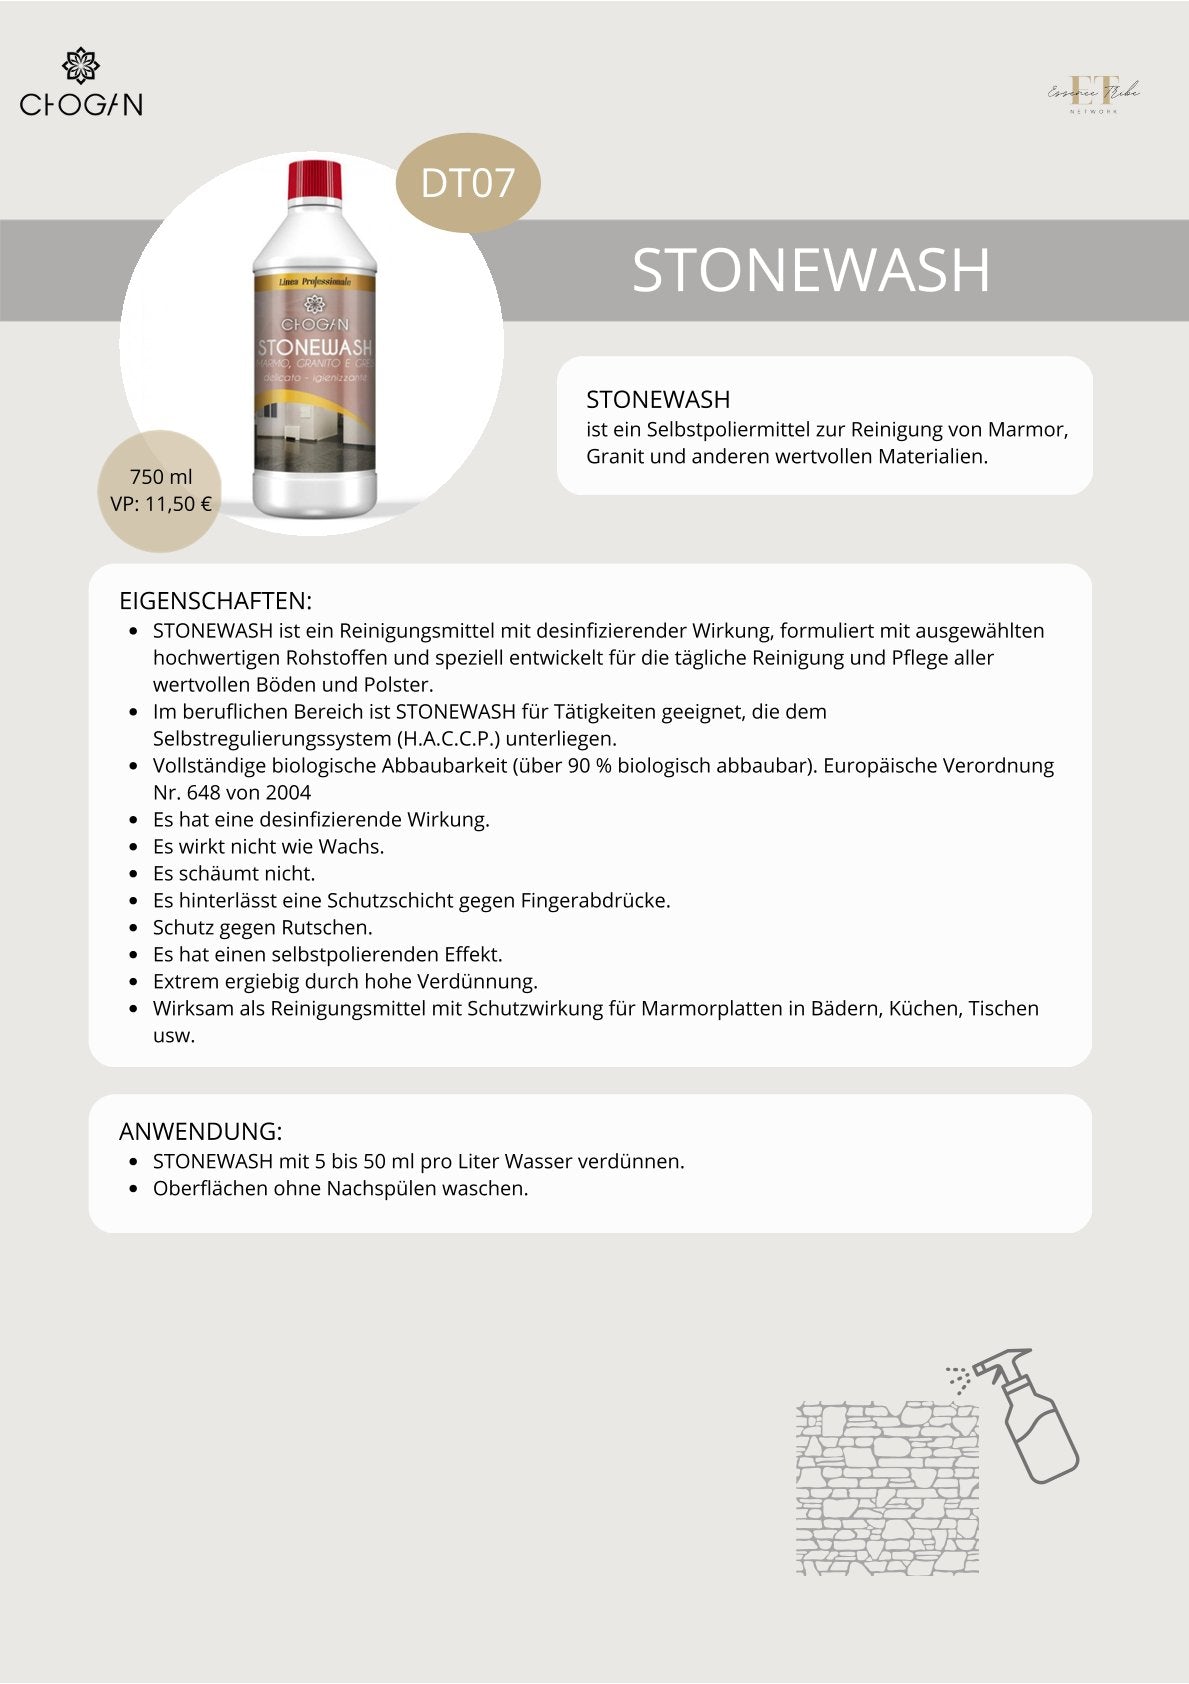 Stonewash – Hygiene-reiniger Mit Selbstglanz-effekt Für Granit, Marmor Und Steinzeug